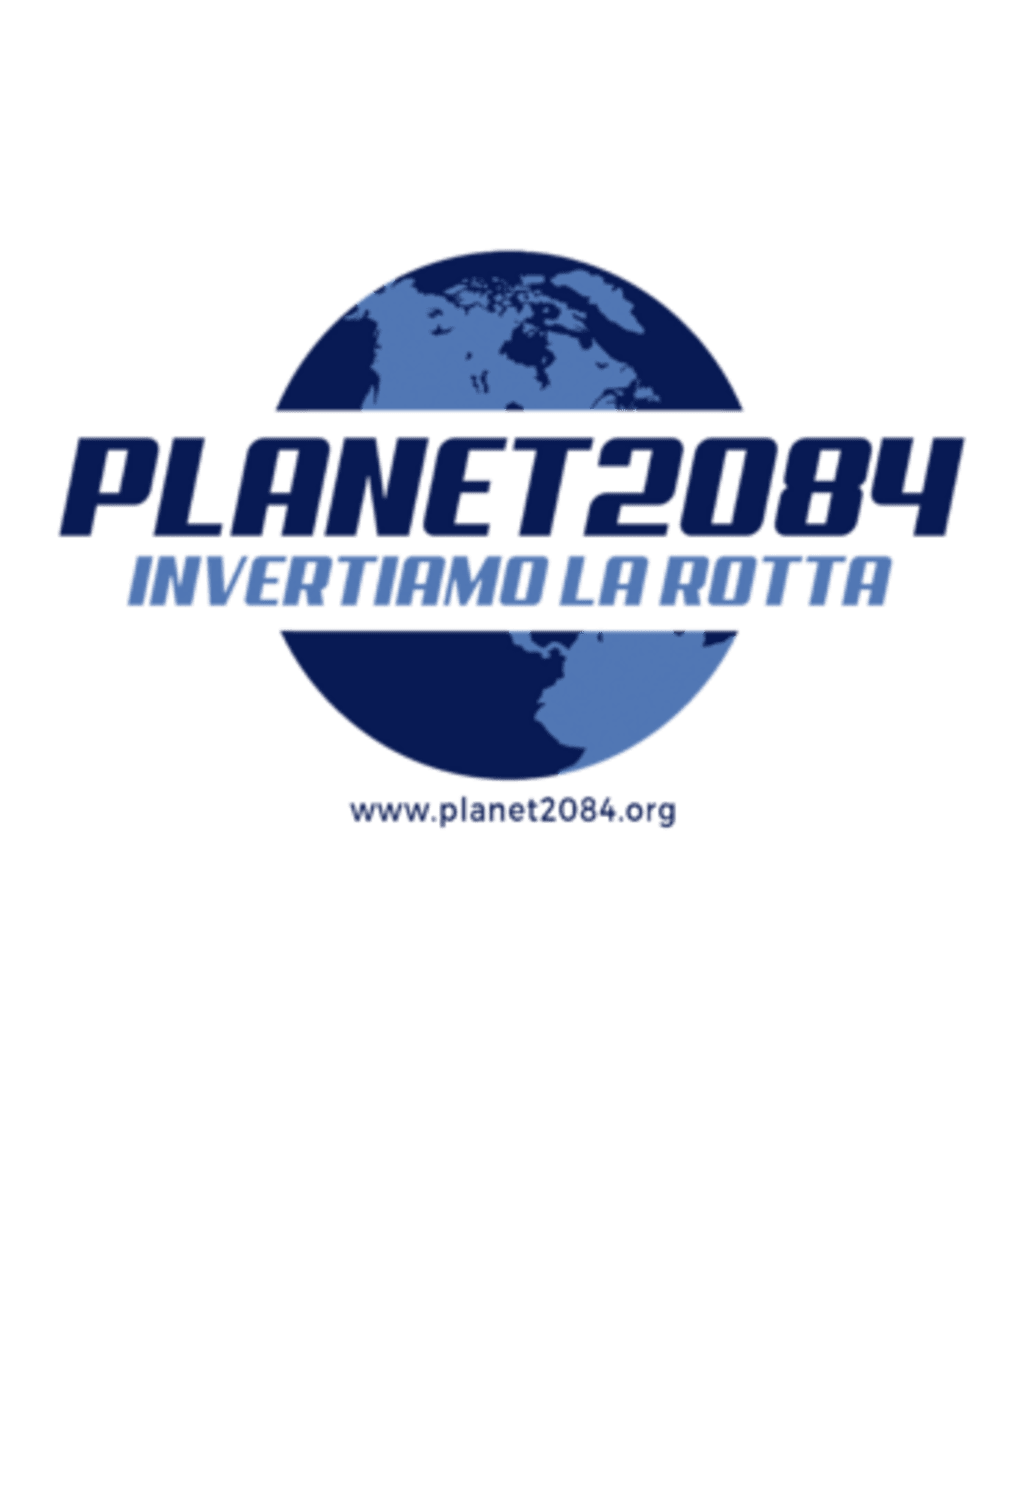 Planet2084 - Invertiamo la rotta!